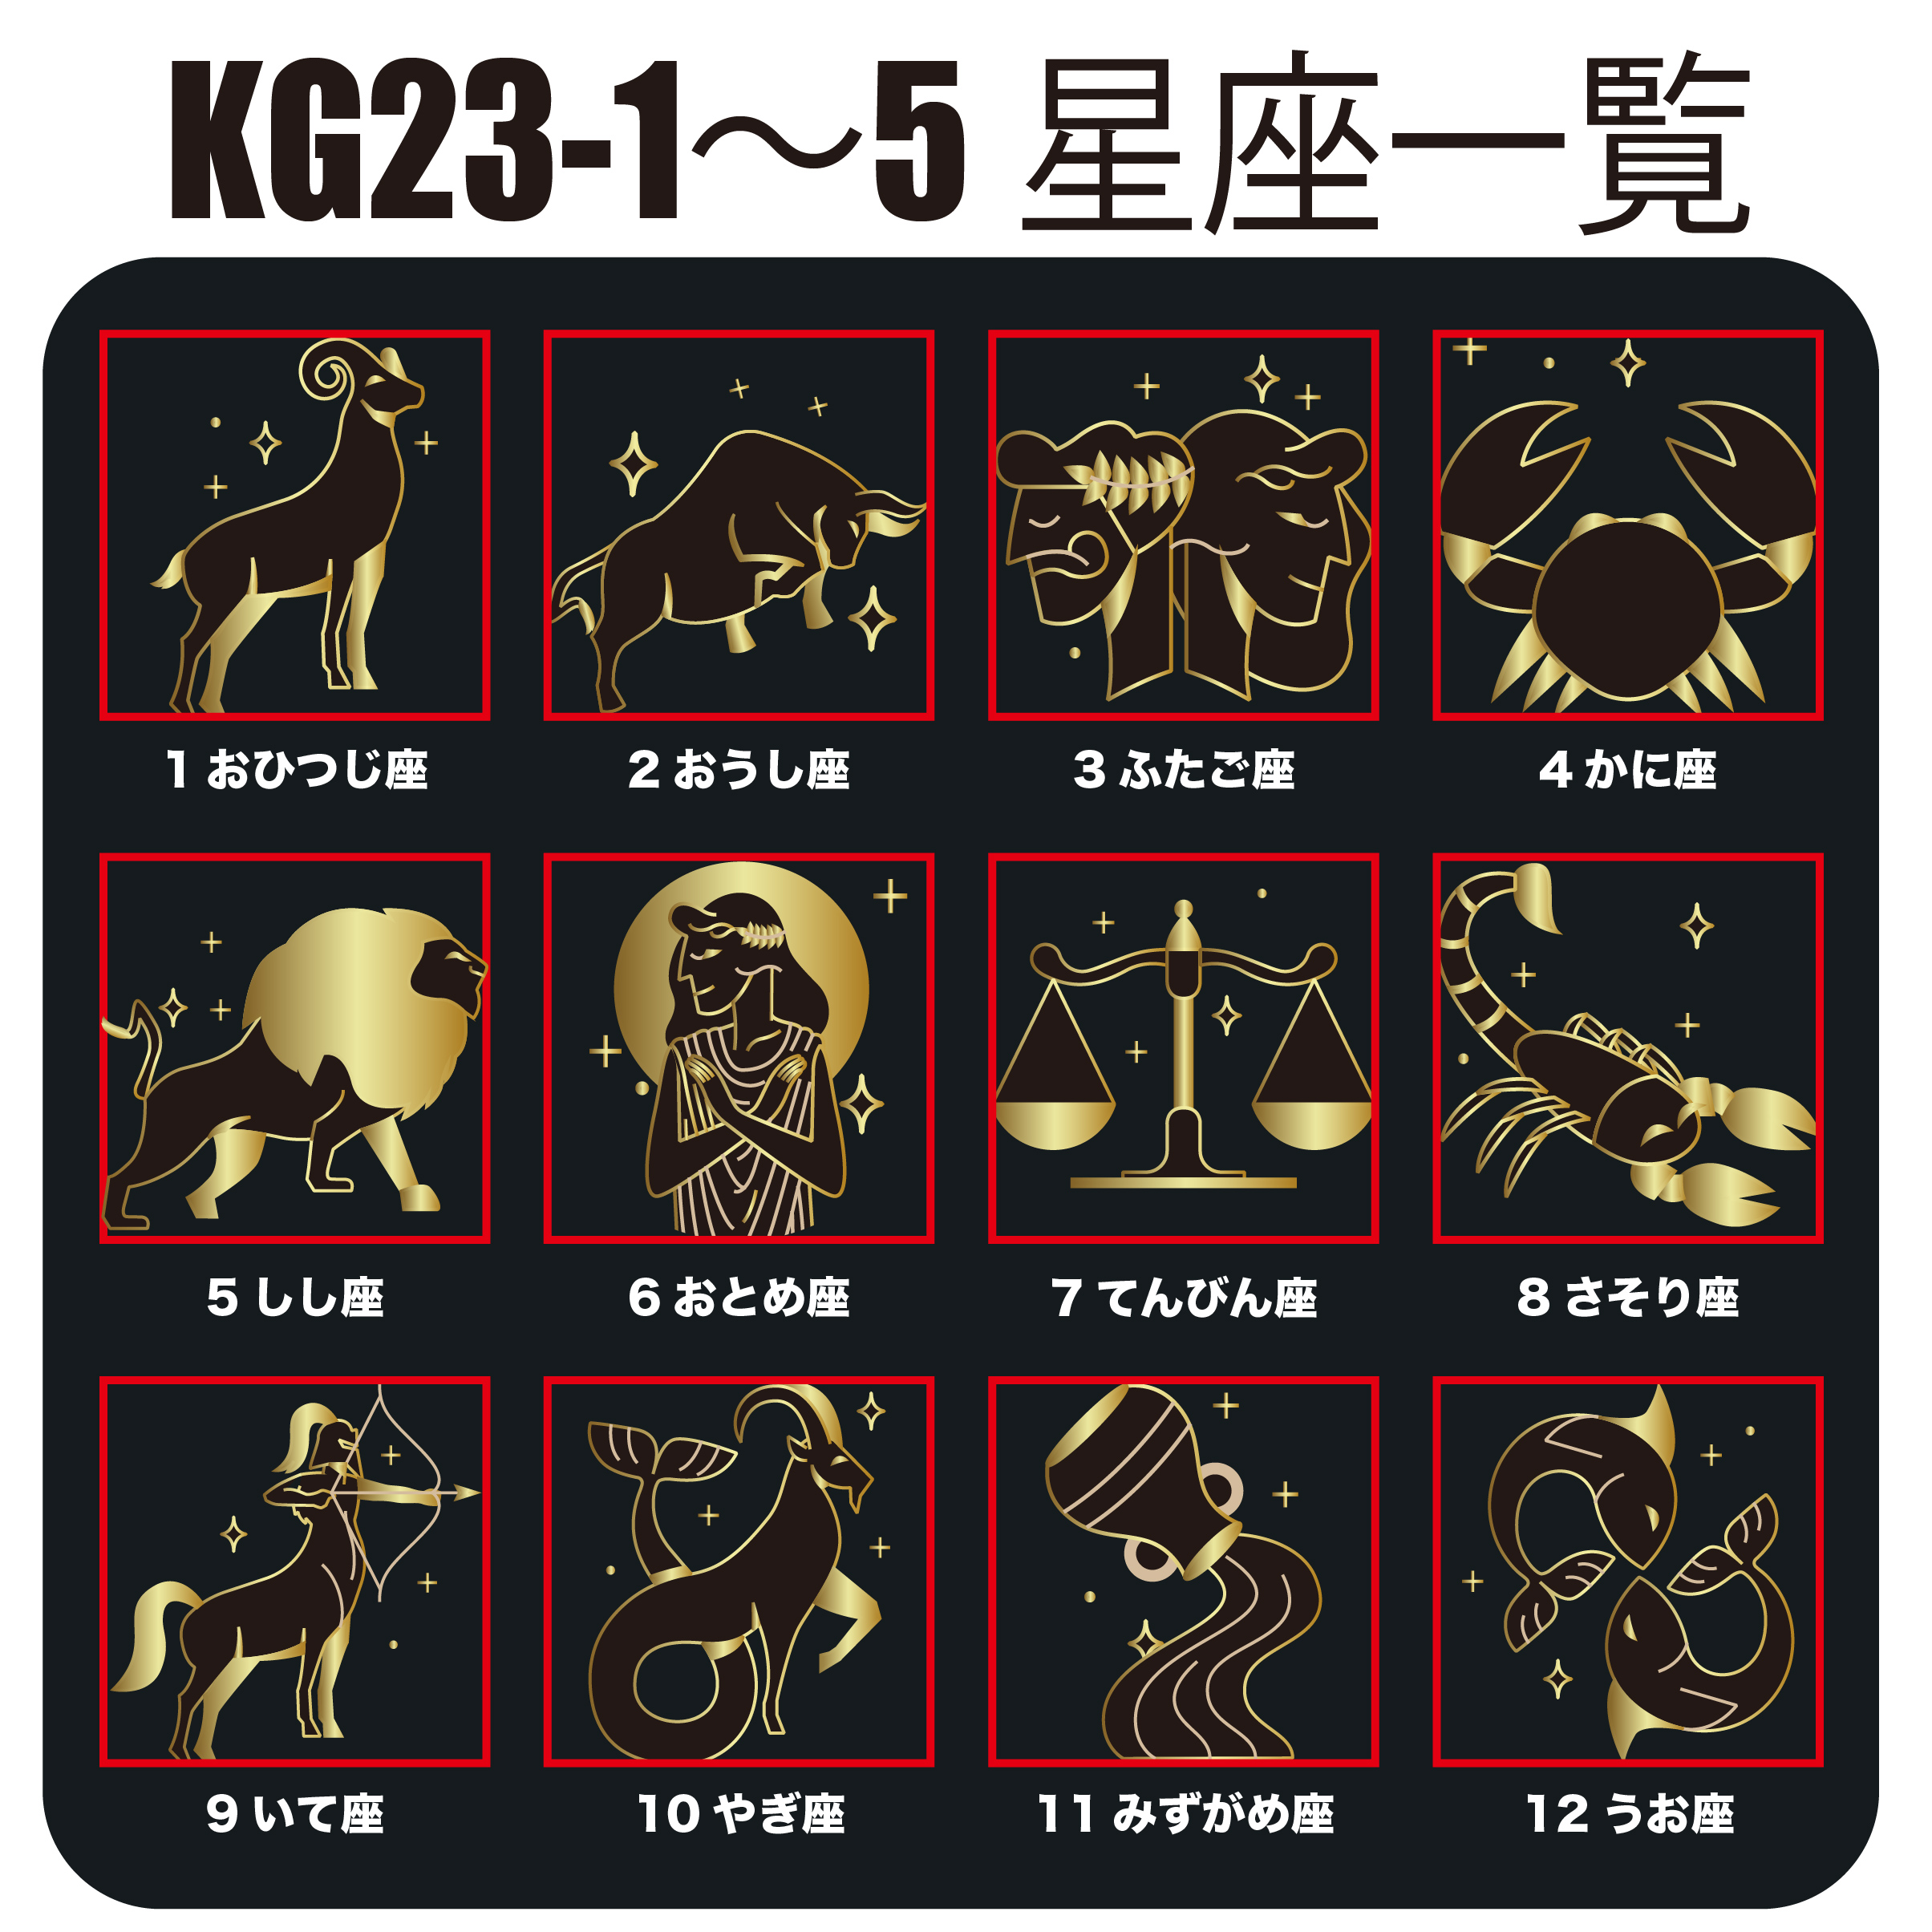 KEGEL KG23-5(受注生産)